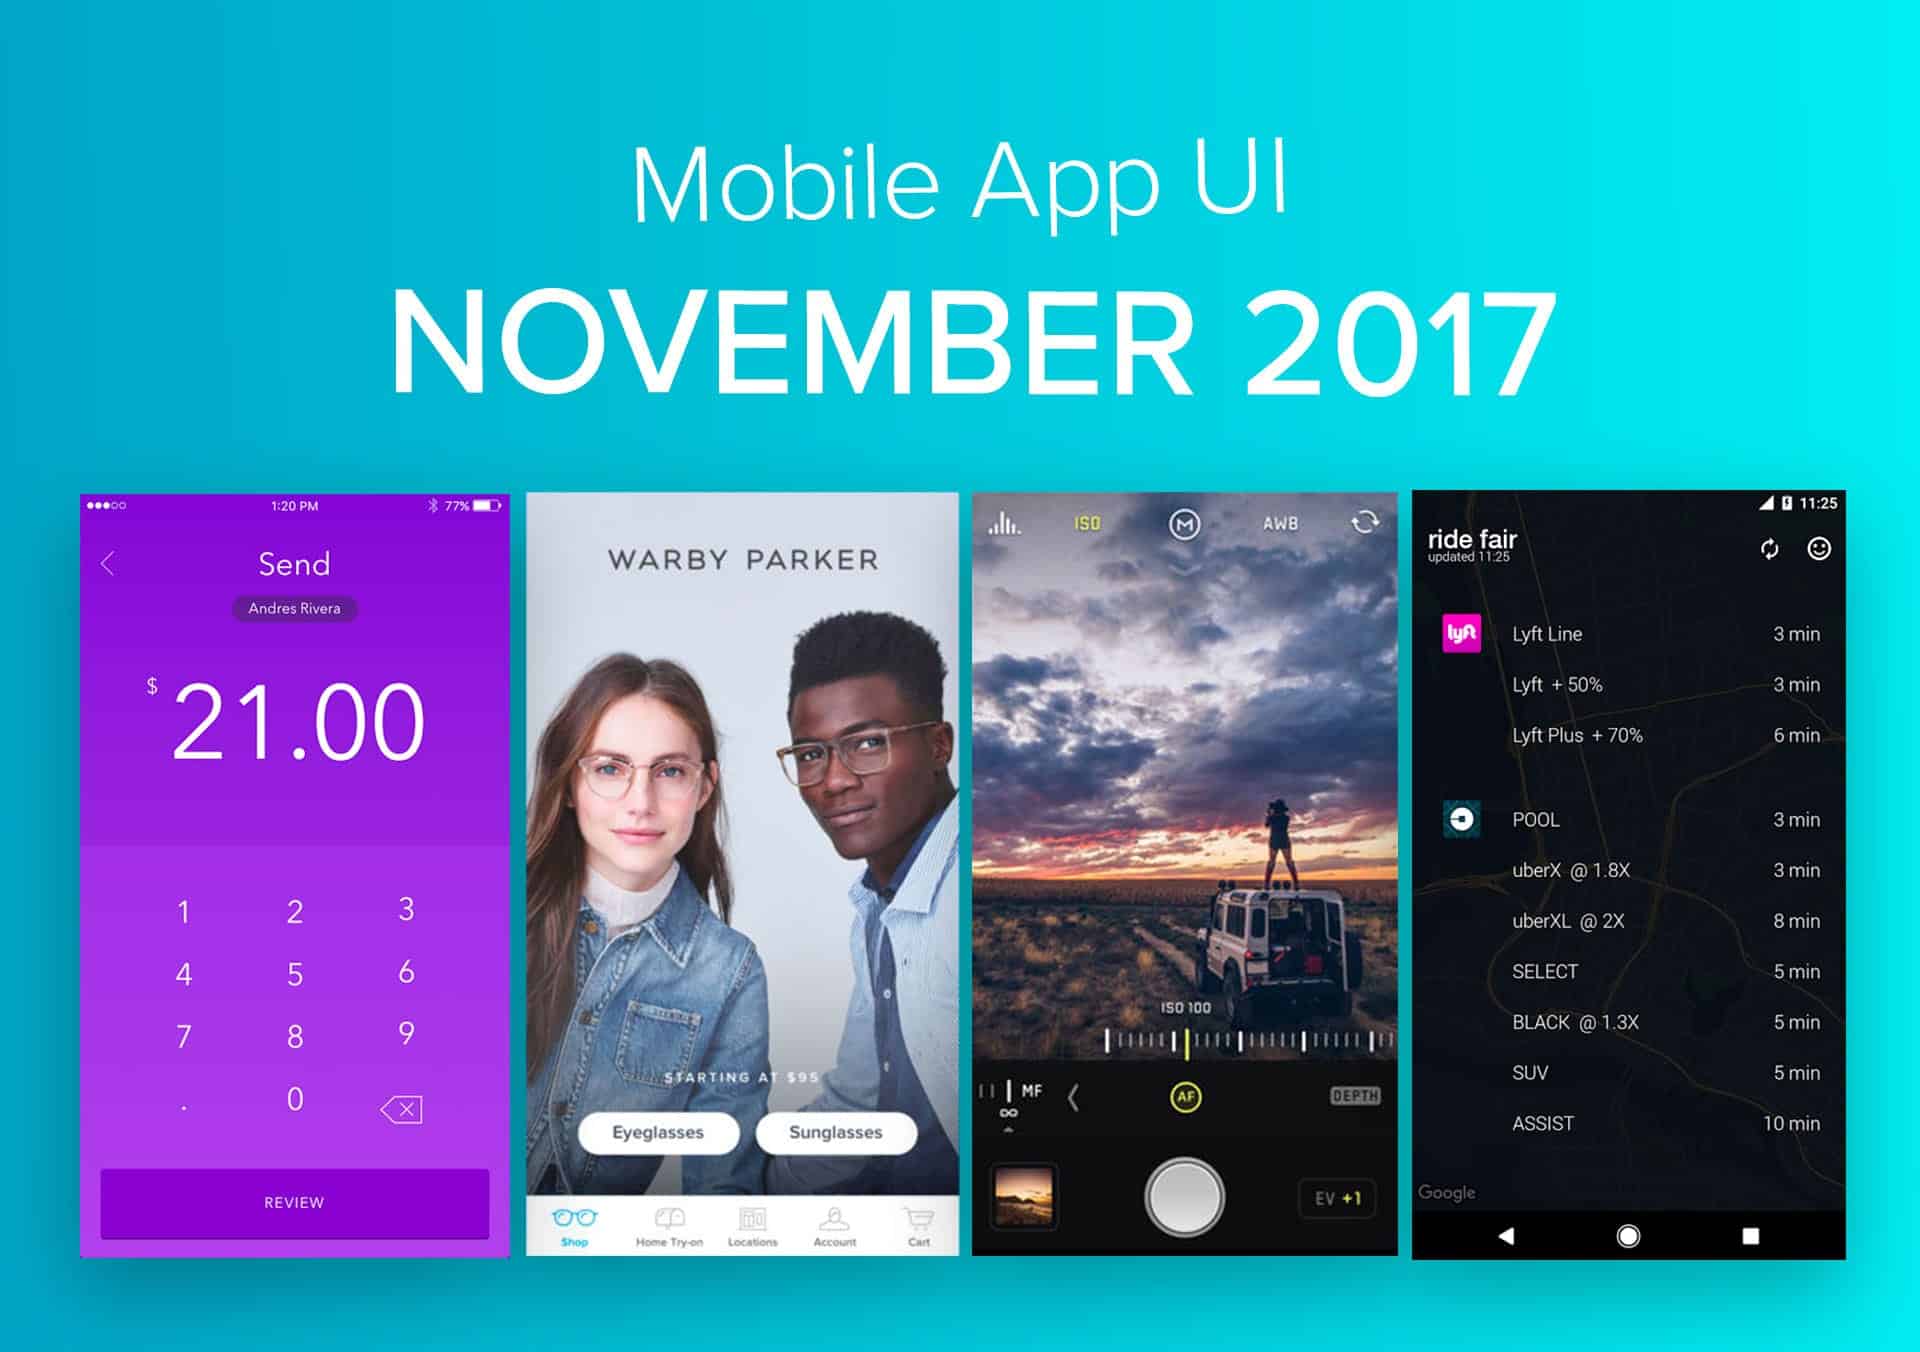 Top 10 Mobile App UI of November 2017